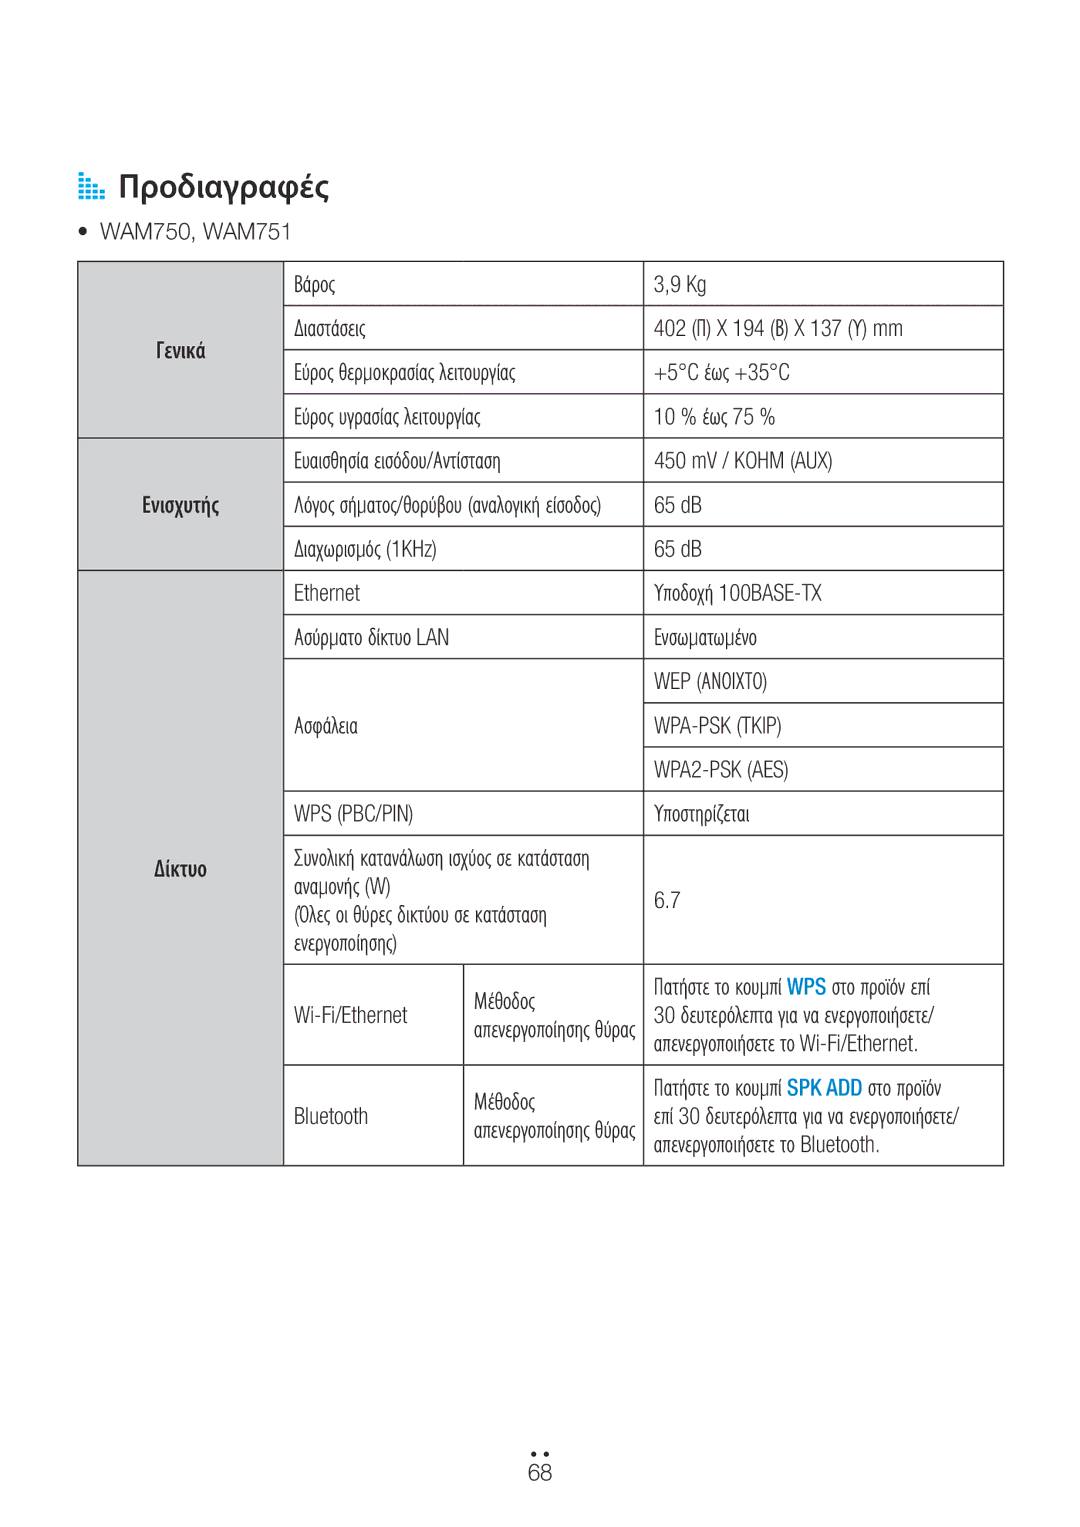 Samsung WAM551/EN, WAM751/EN, WAM550/EN, WAM750/EN manual AA Προδιαγραφές 